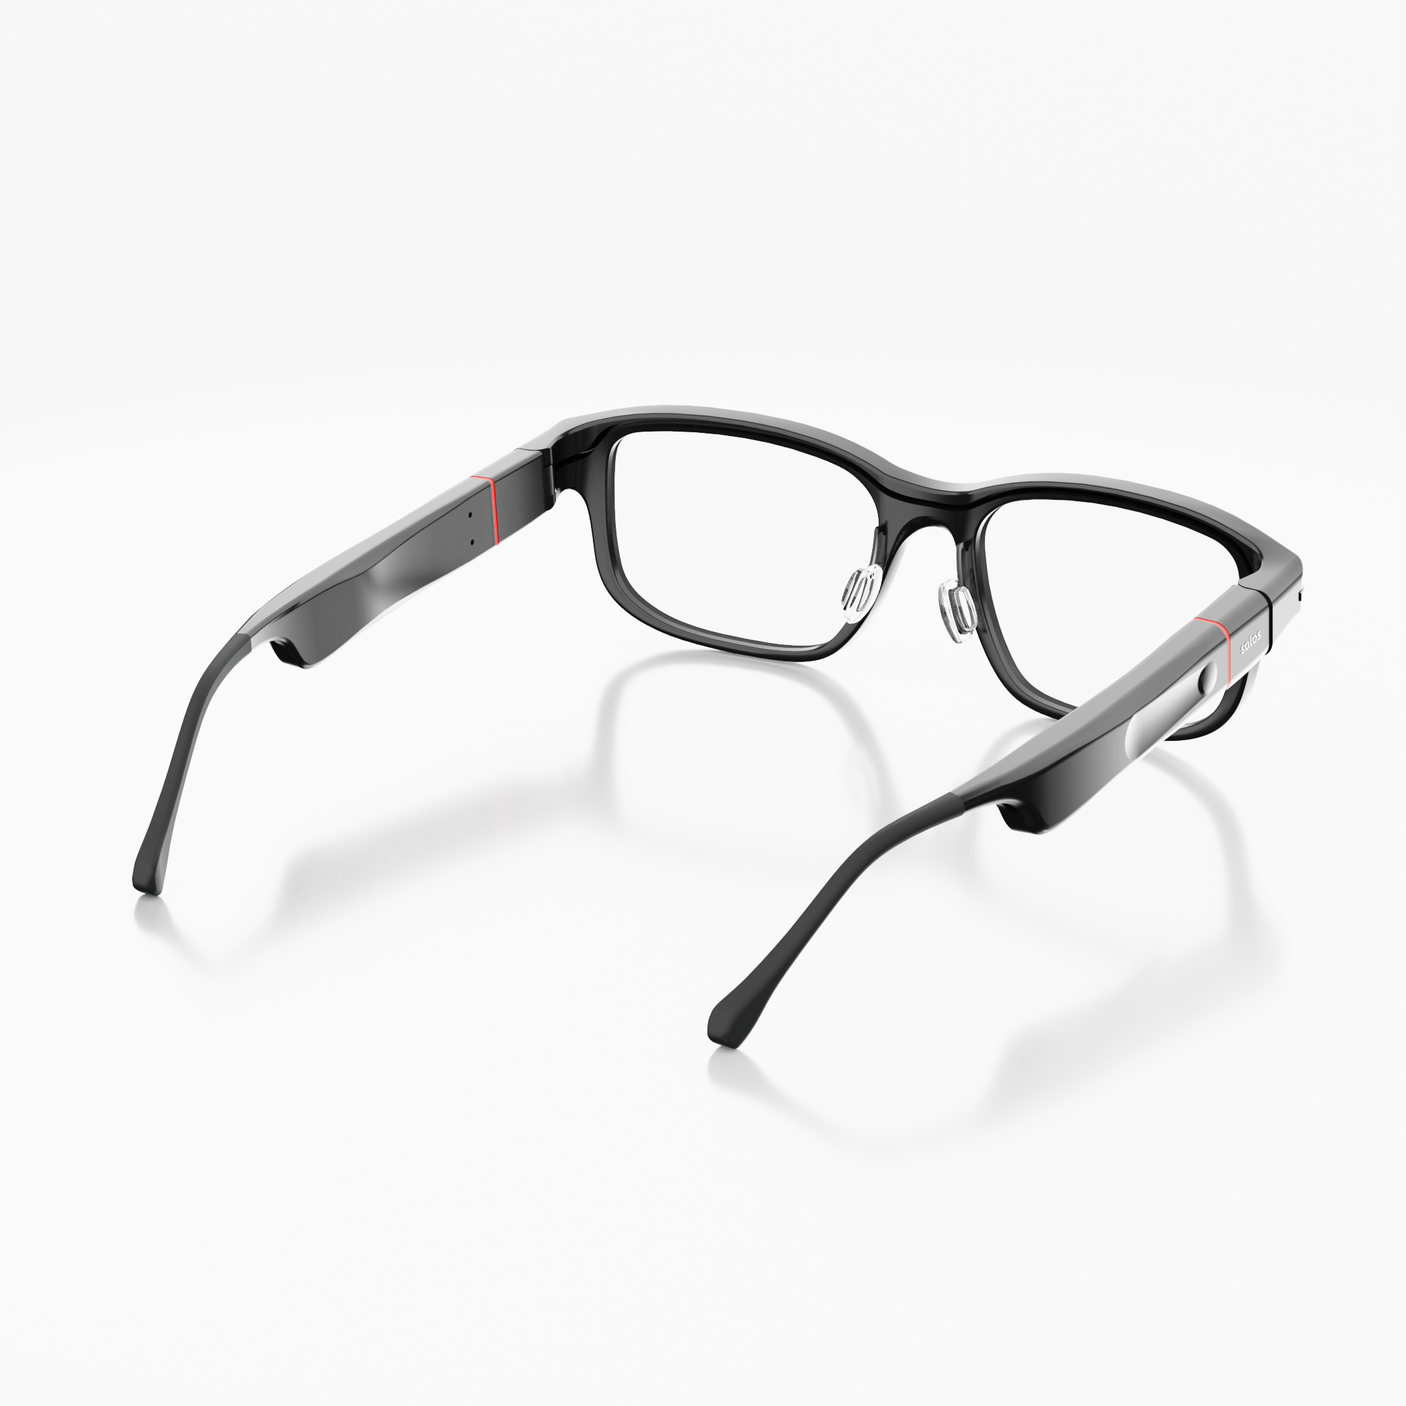 Découvrez les AirGo3 : des lunettes connectées RA